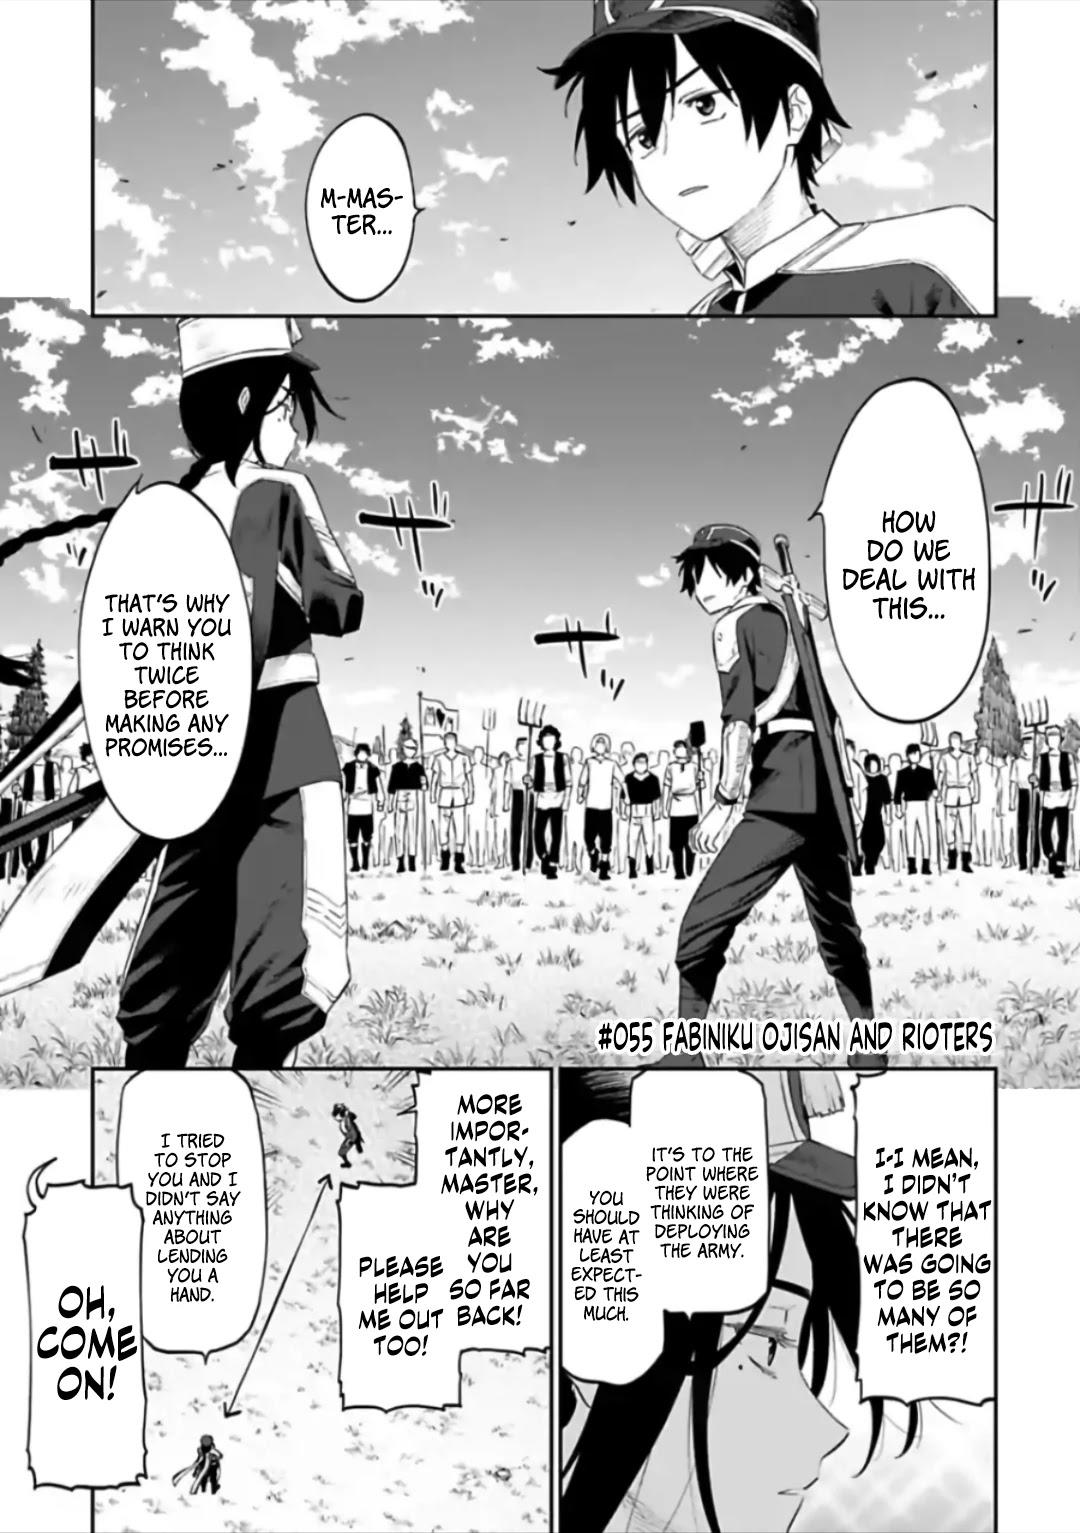 Read Manga Fantasy Bishoujo Juniku Ojisan To - Chapter 15